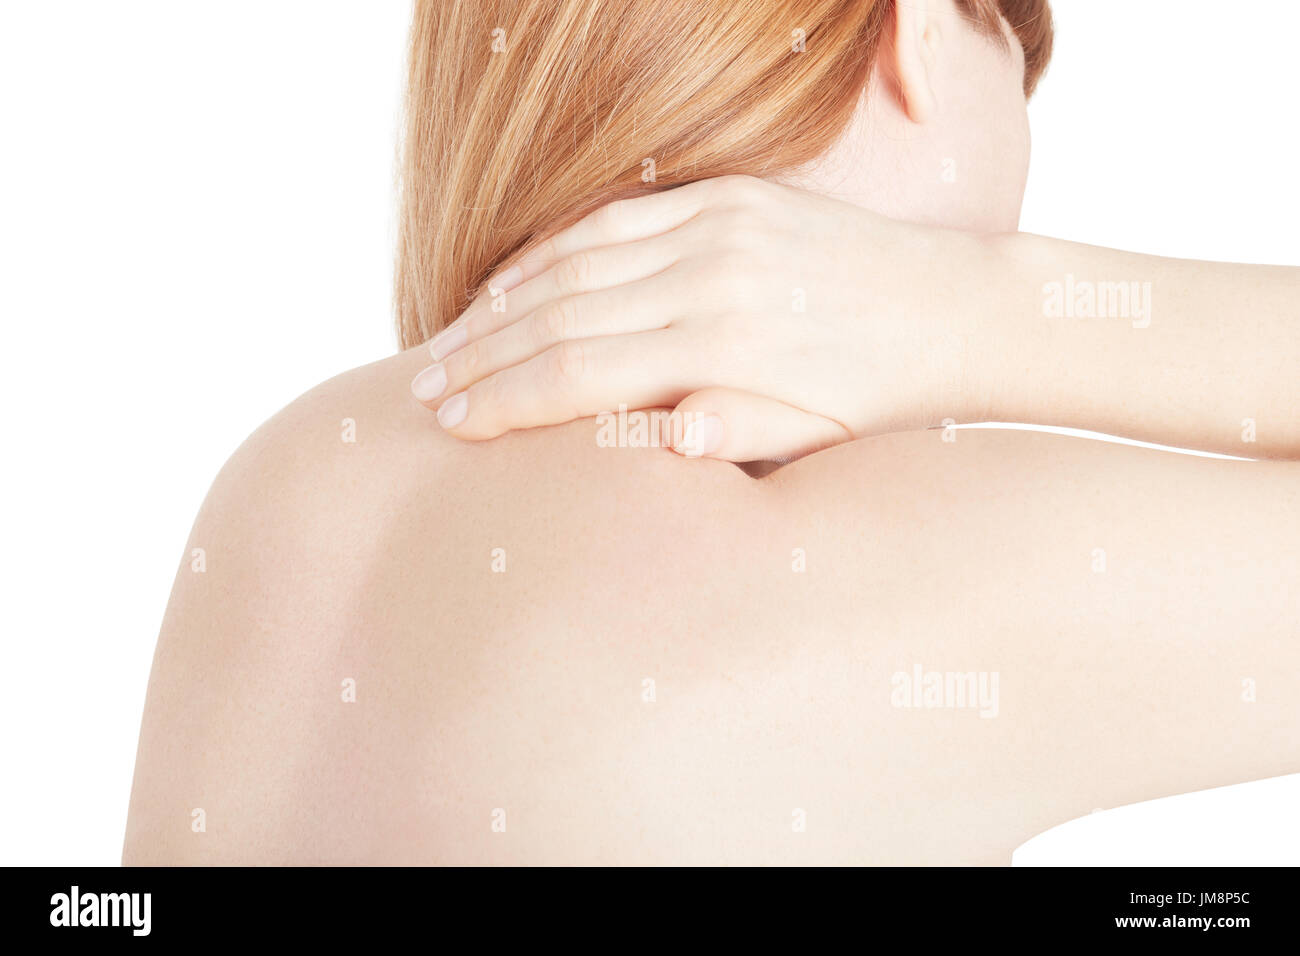 Frau mit Nackenschmerzen, die Berührung mit der Hand des schmerzhaften Teil isoliert auf weiss, Clipping-Pfad Stockfoto